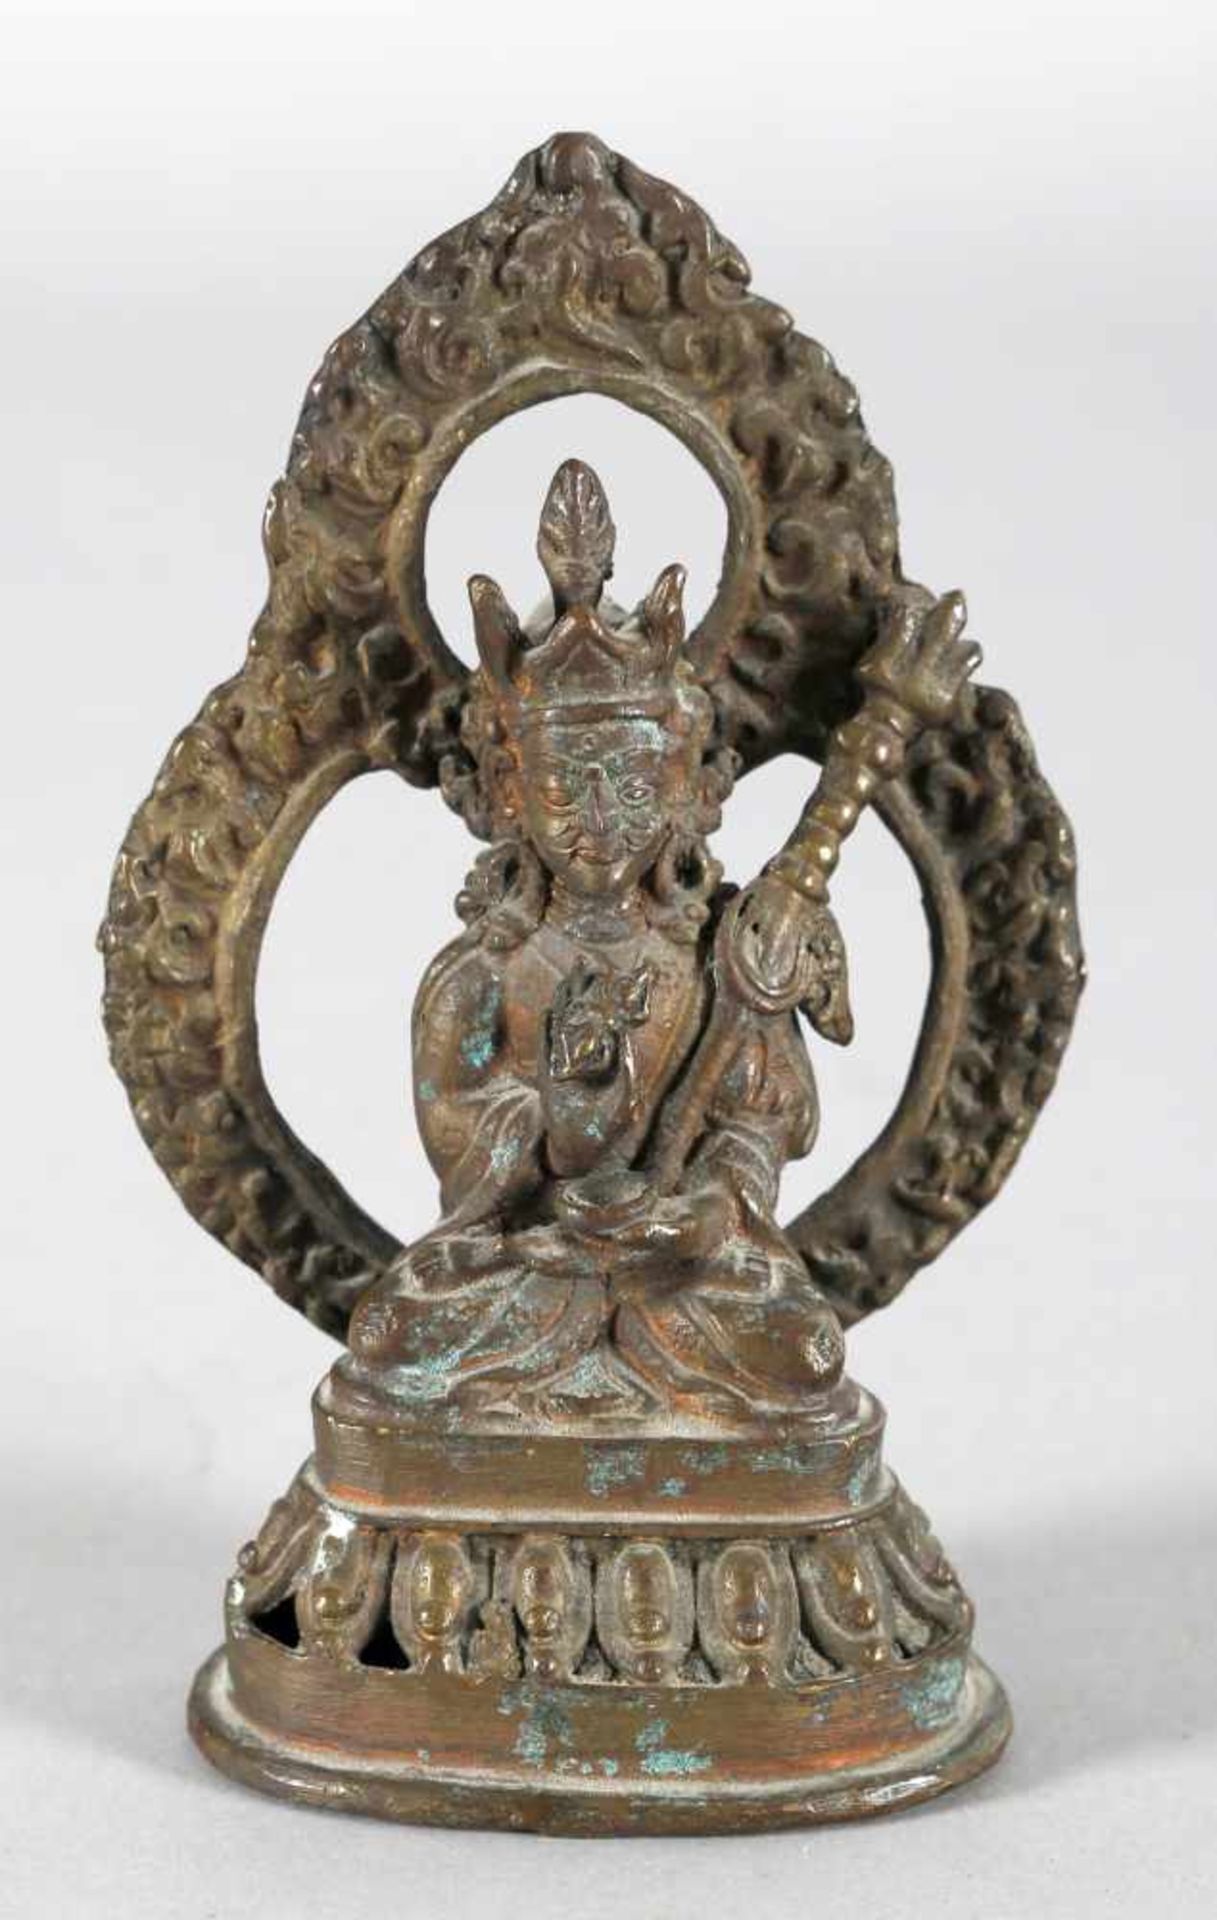 Padmasambhava Buddha aus Bronze, wohl Tibet, 19./20. Jh.in sitzender Meditationshaltung als Lotos-